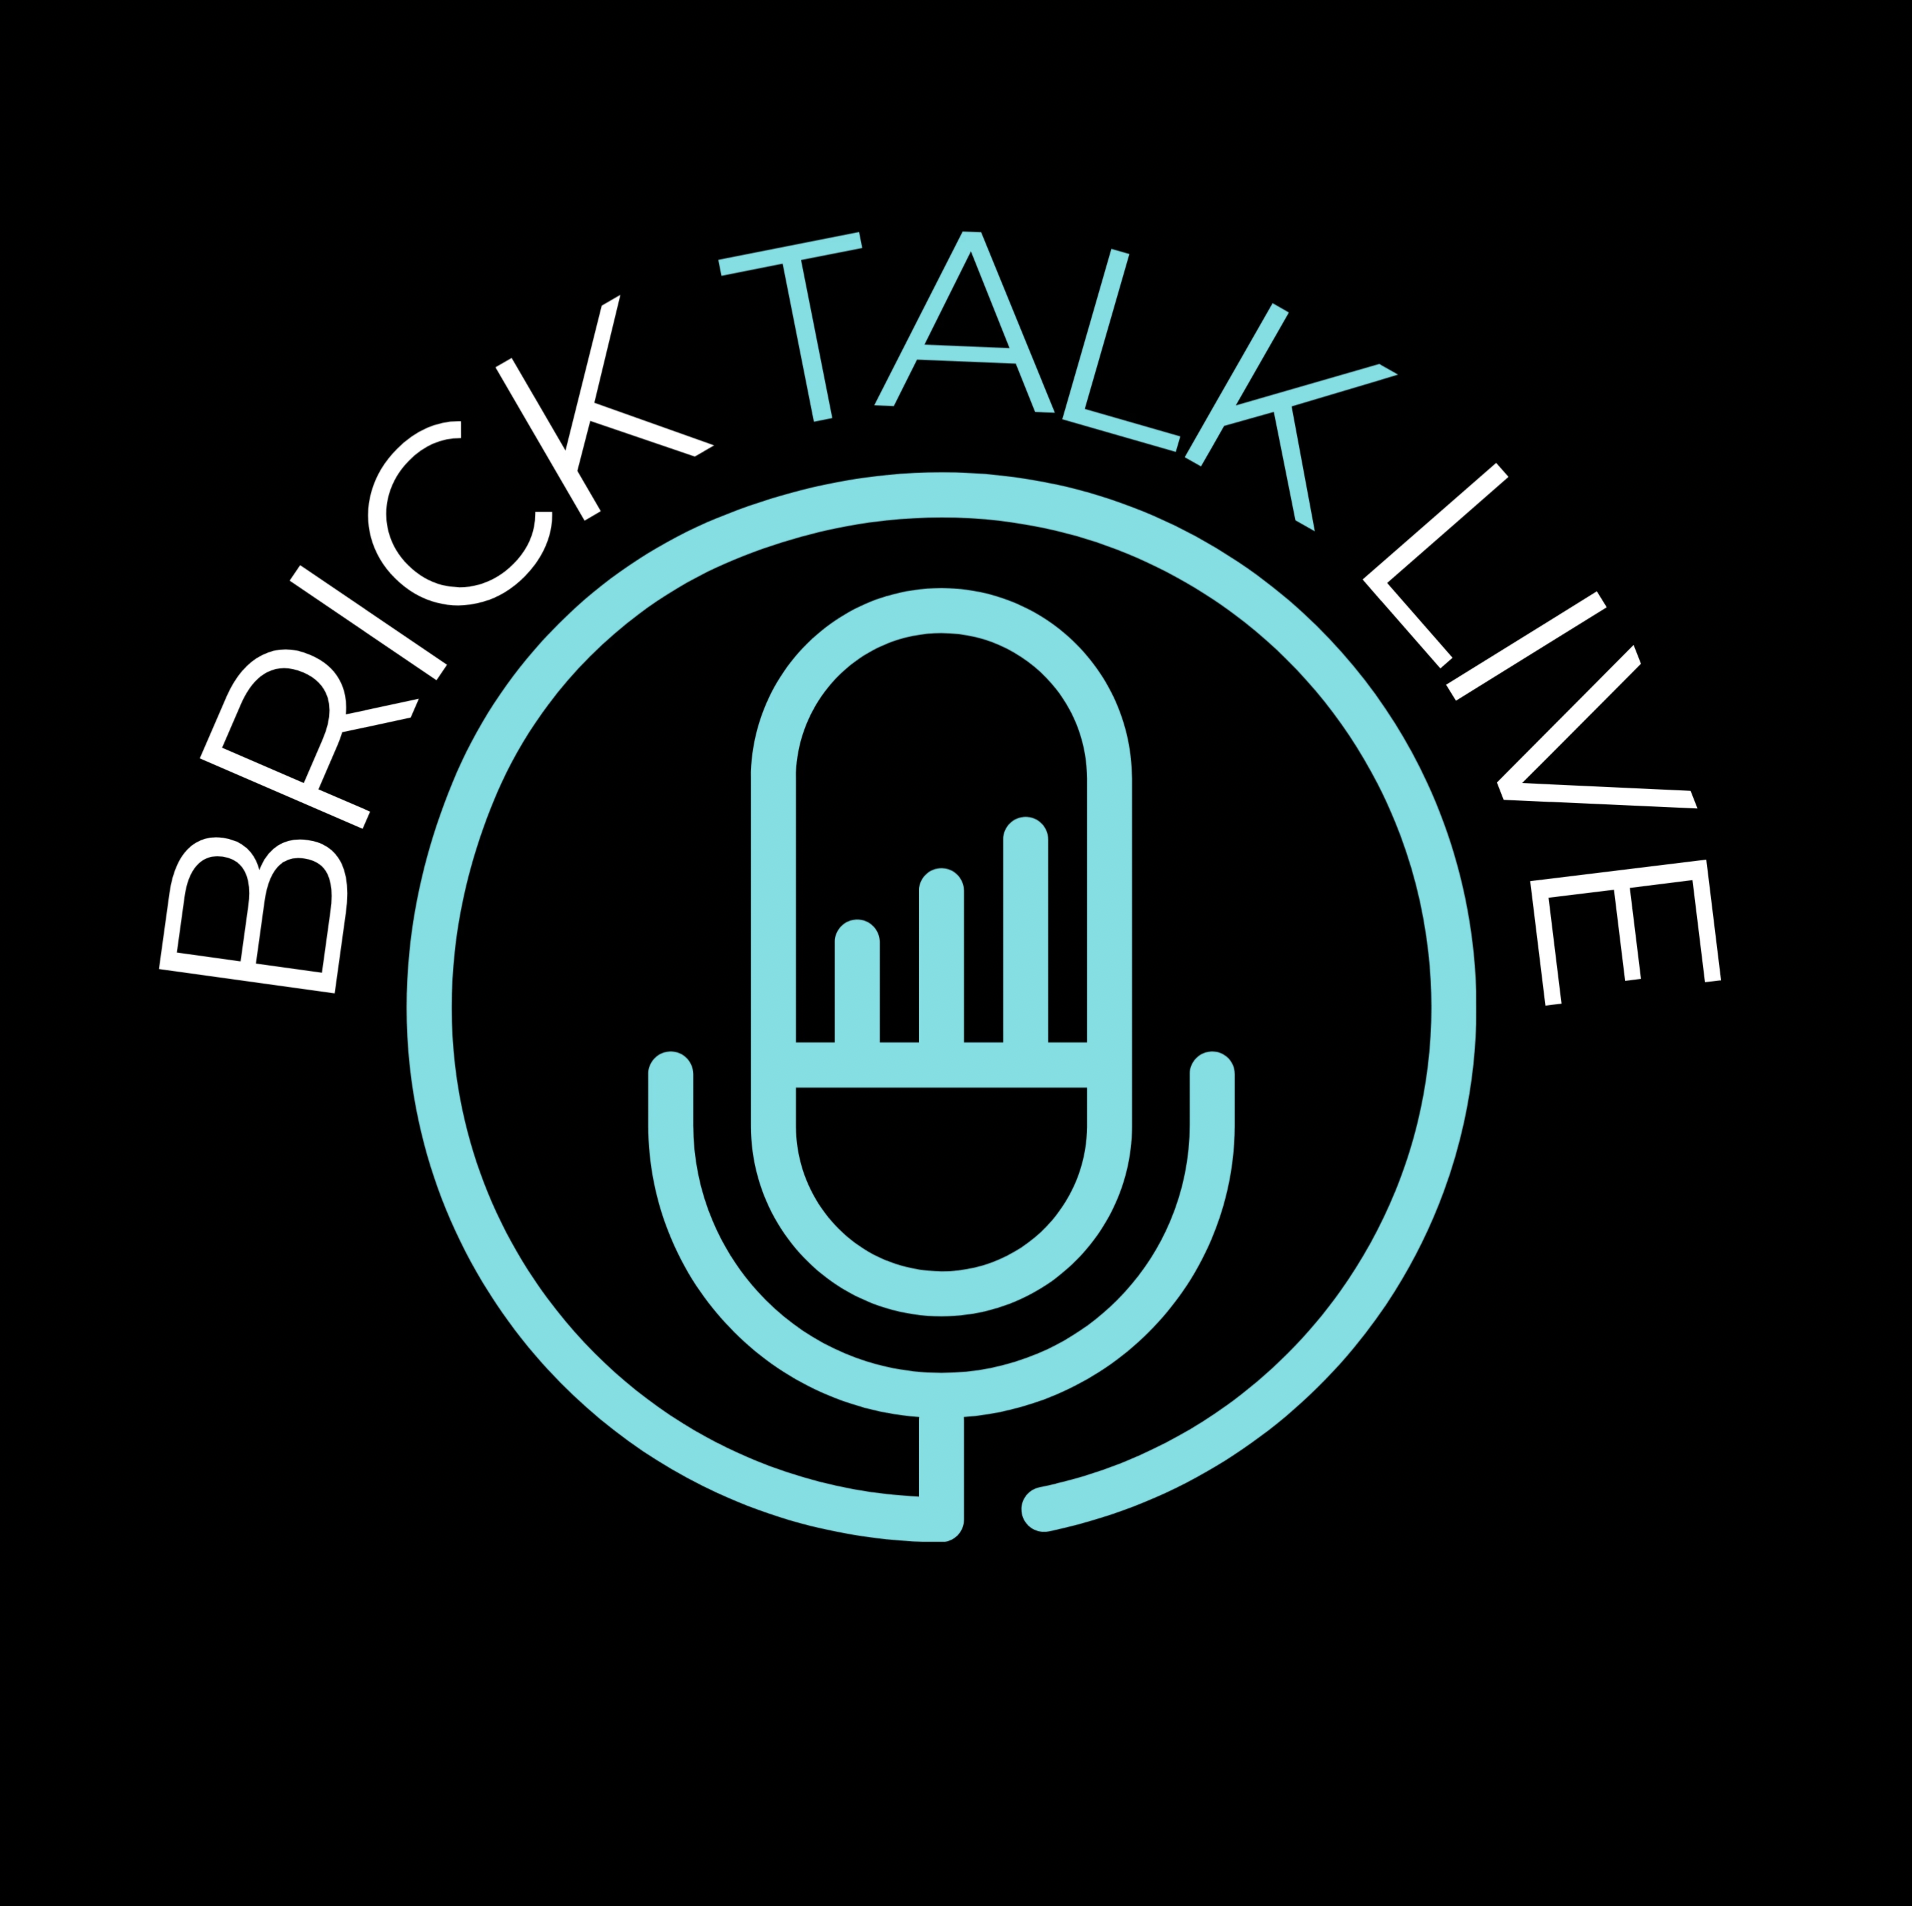 Brick Talk Live